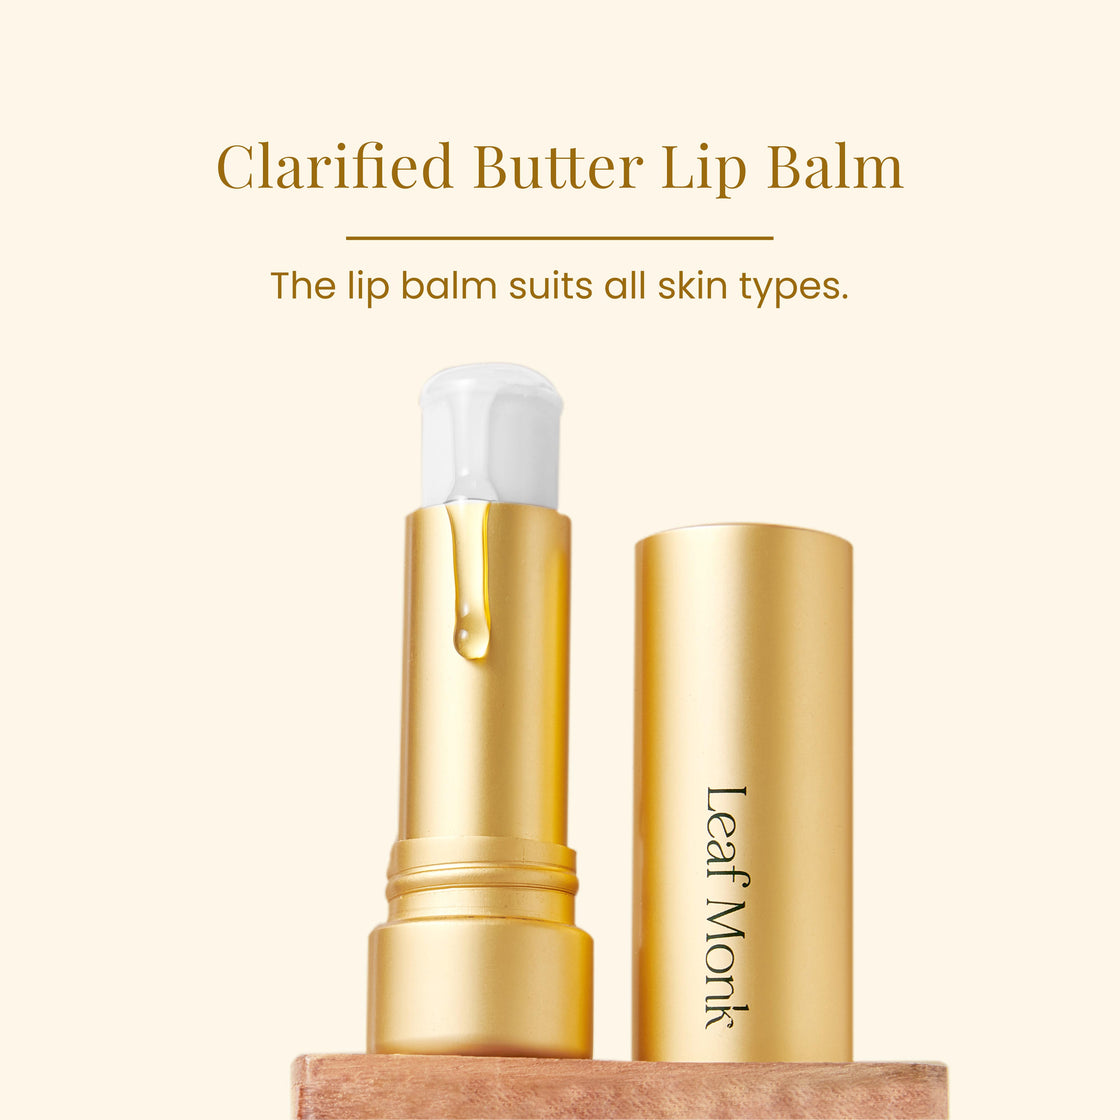 Clarified Butter Lip Balm